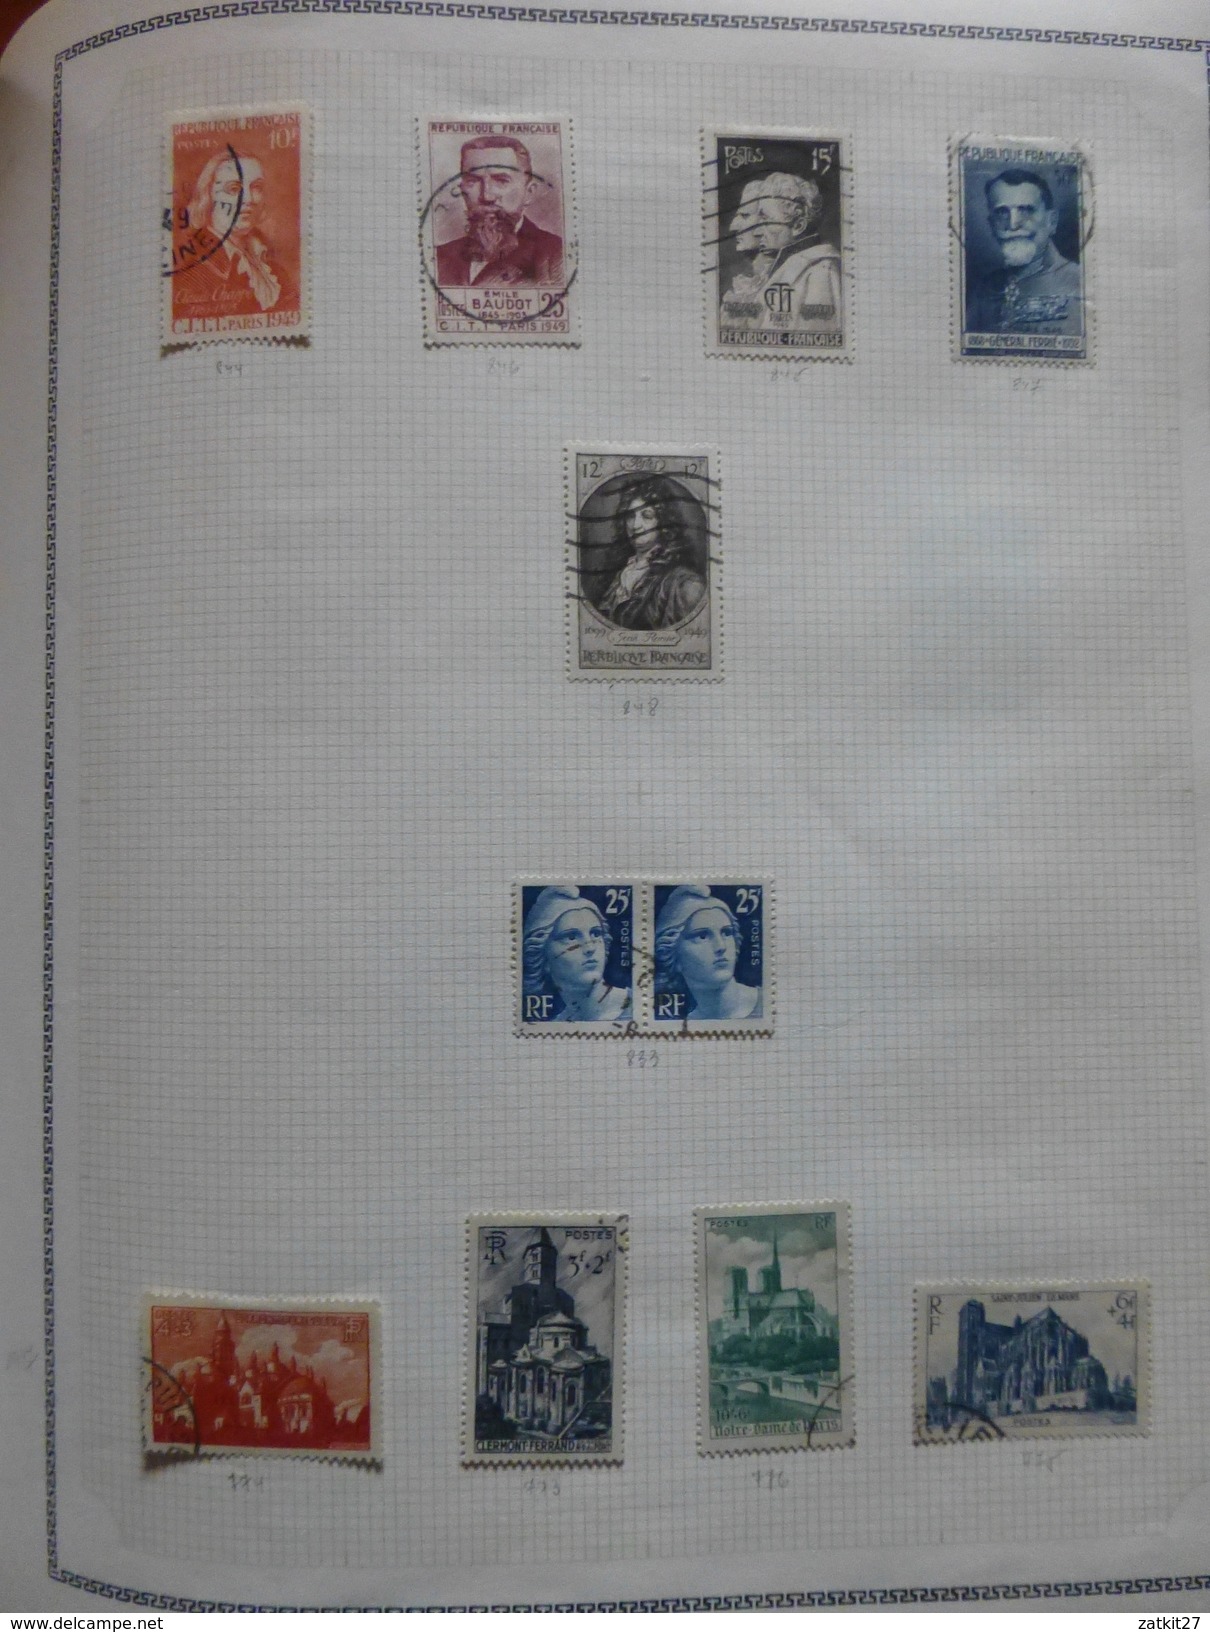 1849 à 1965 timbres neufs **, * et oblitérés